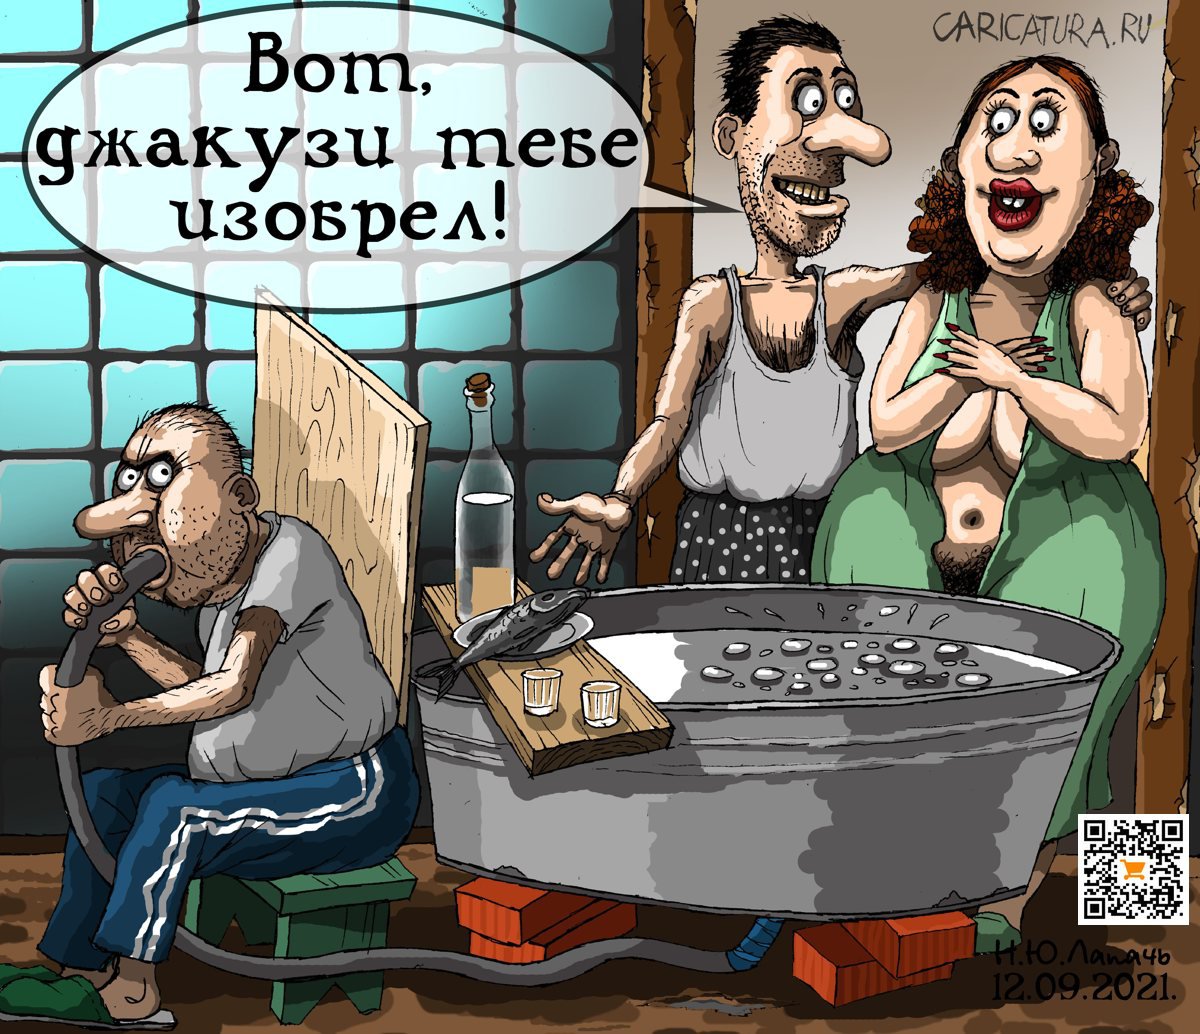 Карикатура "Джакузи", Теплый Телогрей